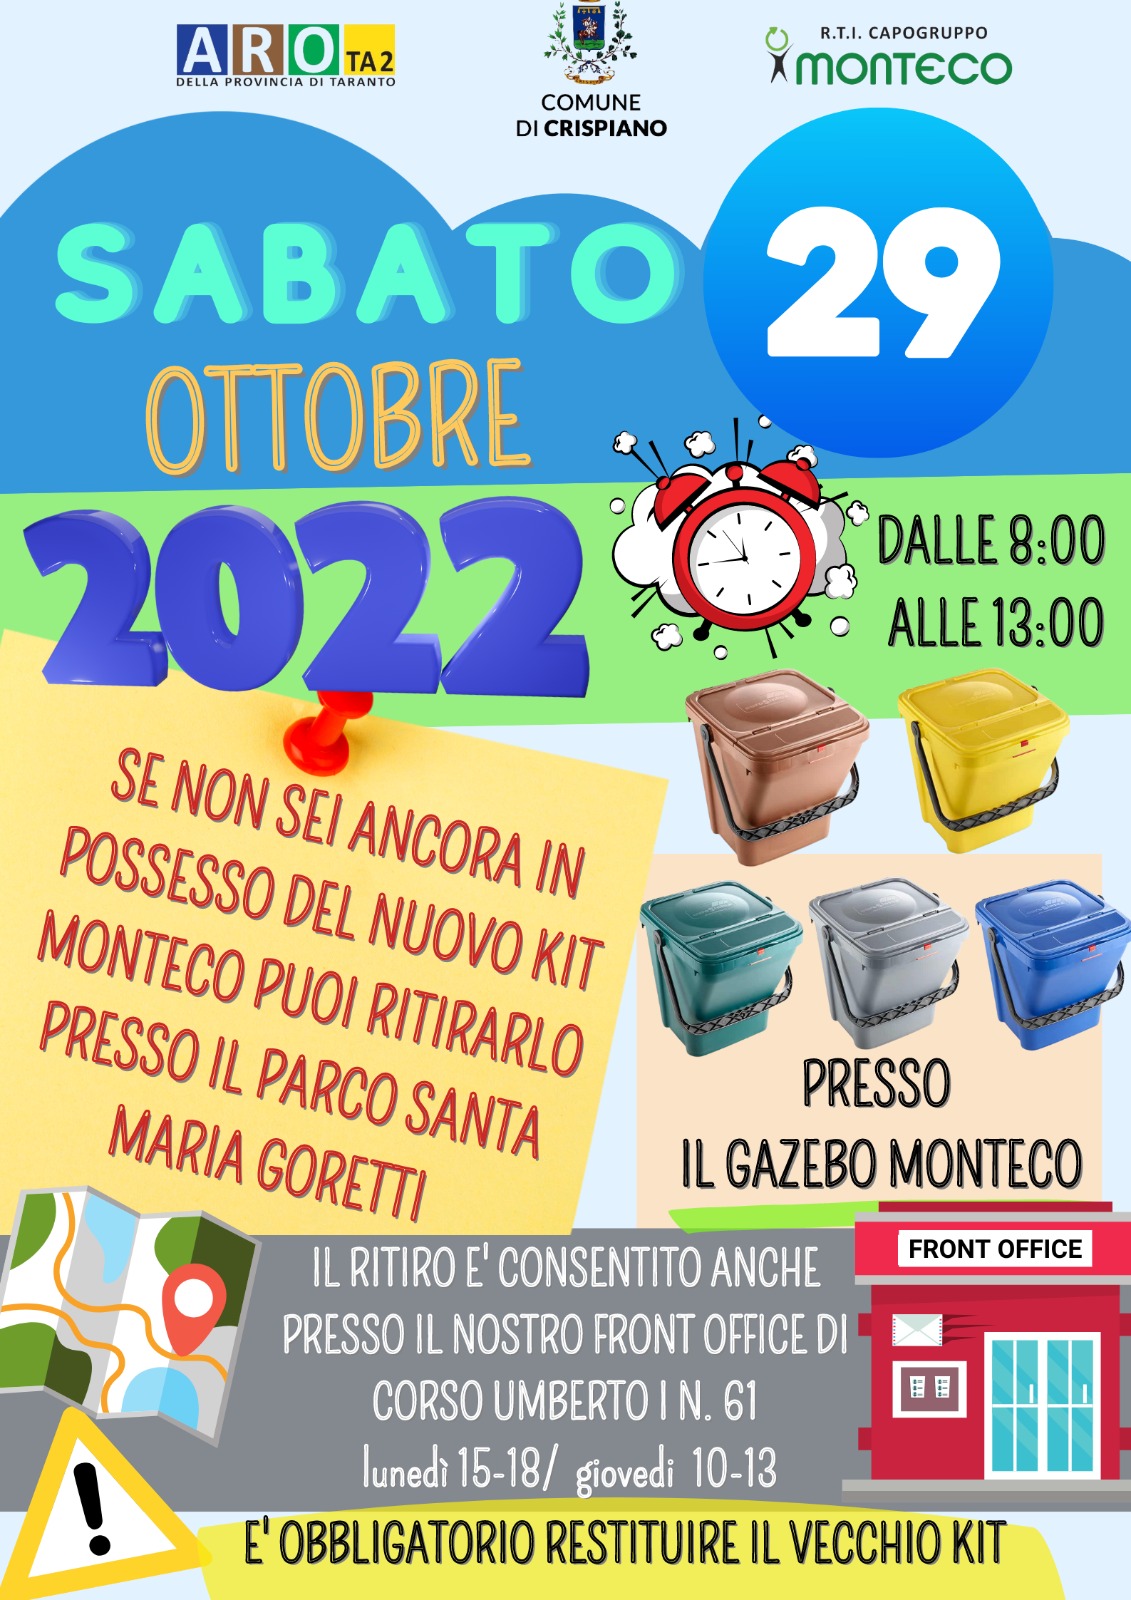 CRISPIANO: Sabato 29 ottobre 2022 distribuzione nuove attrezzature presso parco Santa Maria Goretti